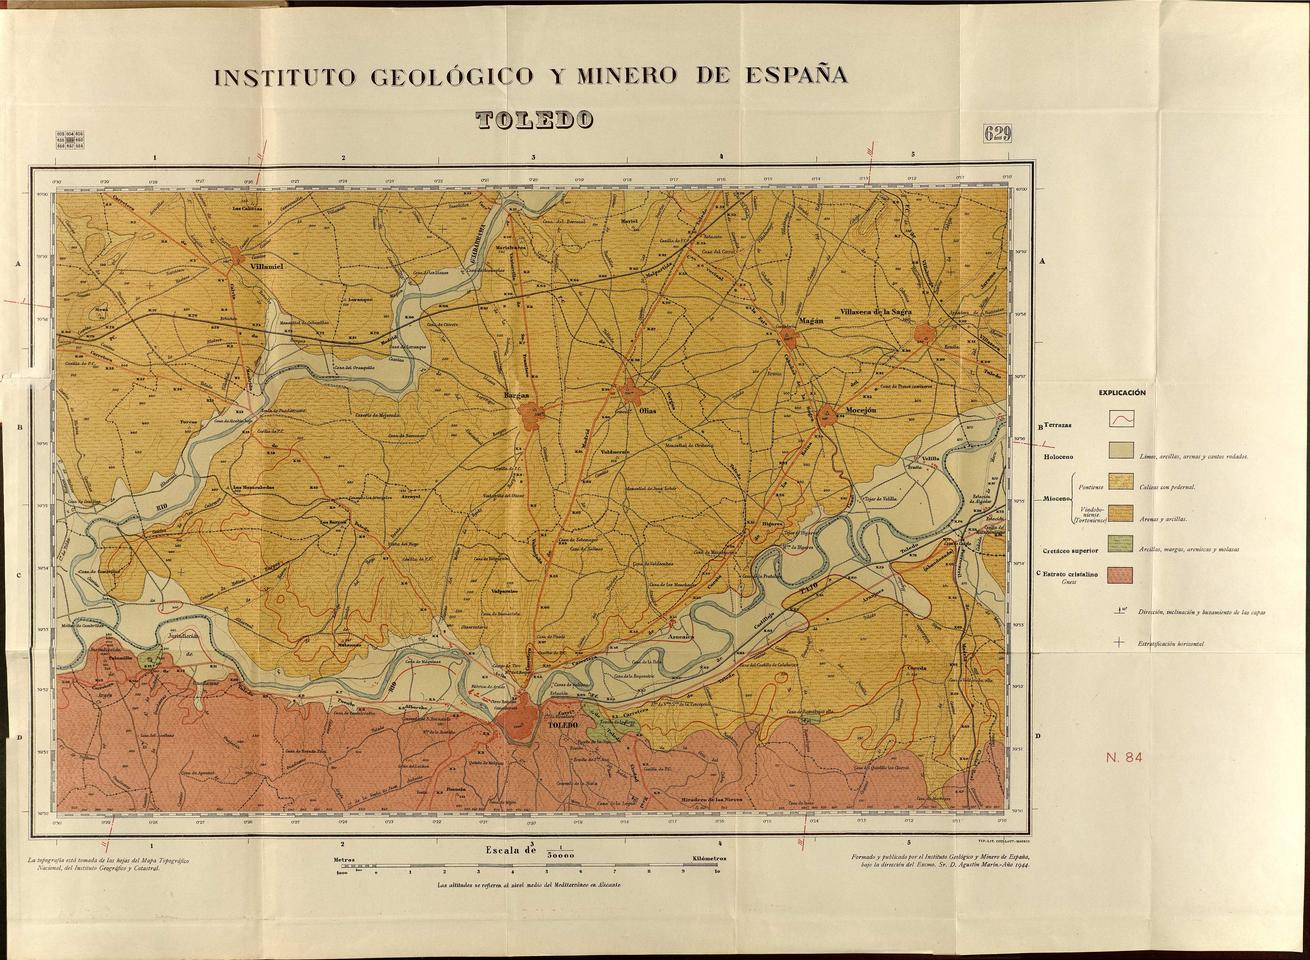 Toledo : [mapa geológico] / formado y publicado por el Instituto Geológico y Minero de España bajo la dirección del Excmo. Sr. D. Agustín Marín.-. [Imagen]